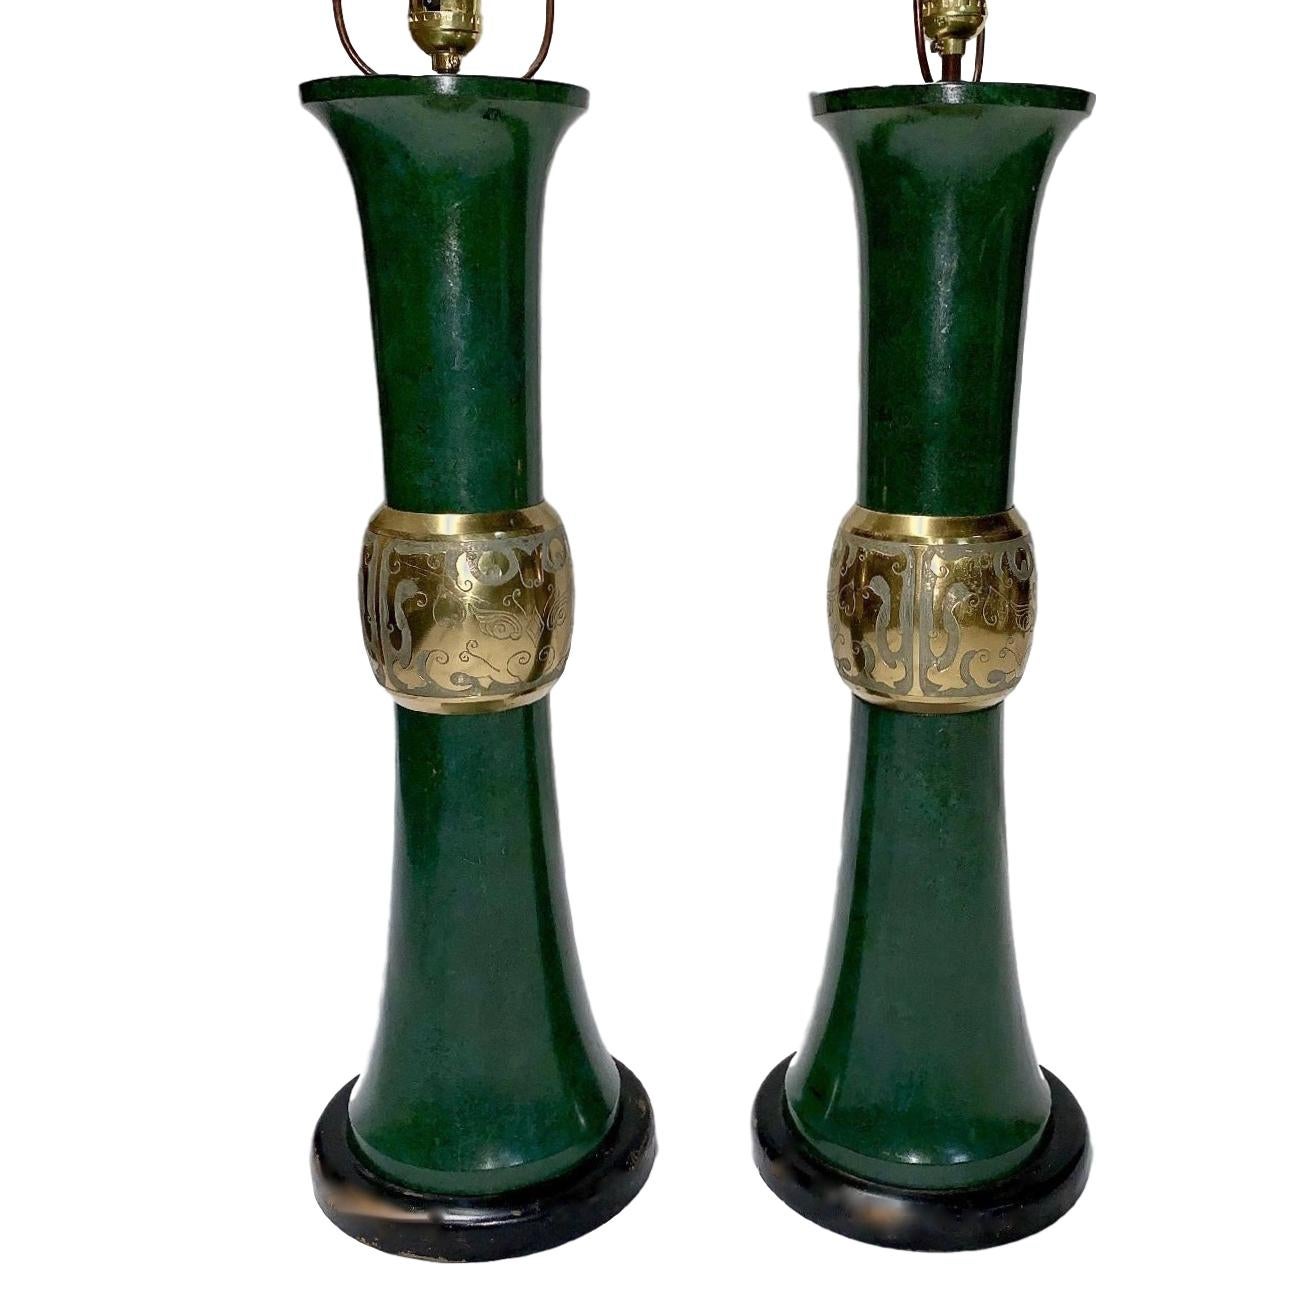 Paire de lampes de table italiennes des années 1960 en bronze patiné et laqué à motif asiatique.

Mesures :
24